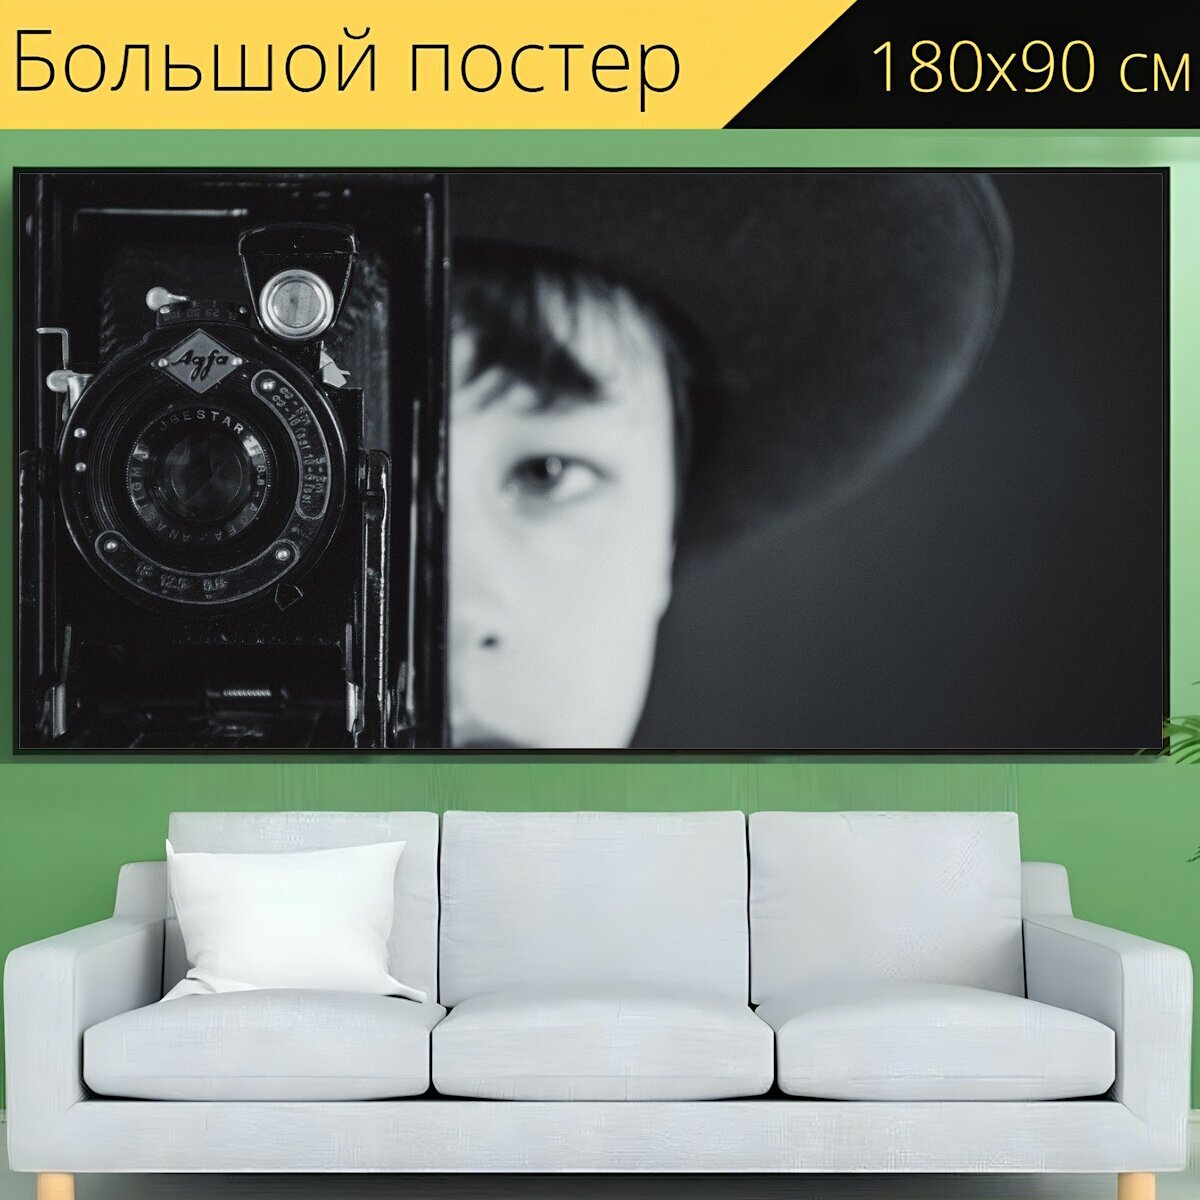 Большой постер "Старый фотоаппарат, мальчик, молодой фотограф" 180 x 90 см. для интерьера